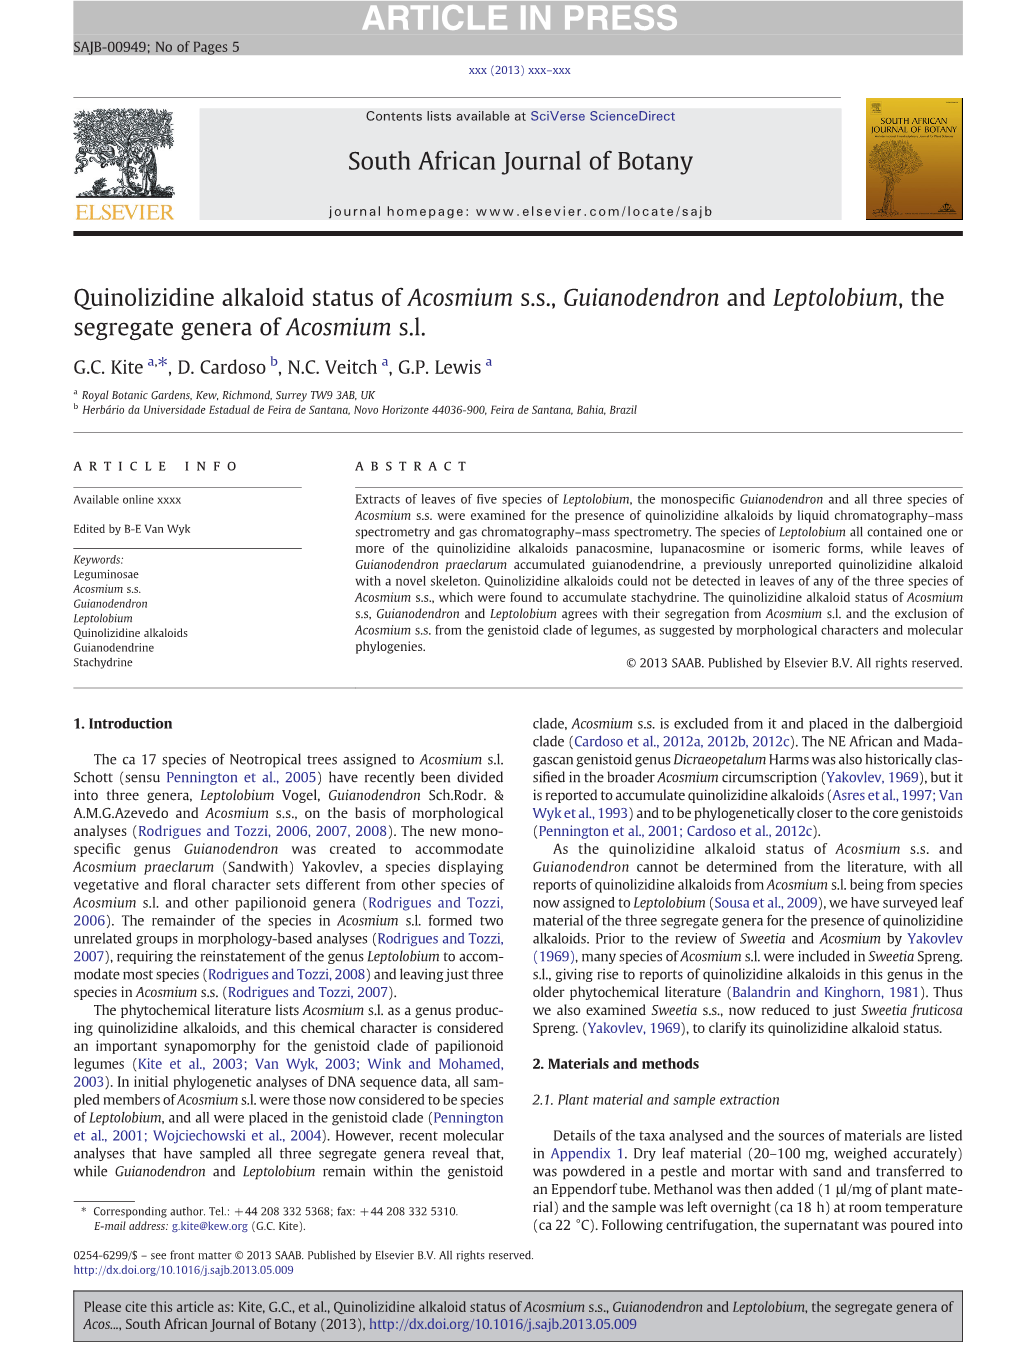 Quinolizidine Alkaloid Status of Acosmium S.S., Guianodendron and Leptolobium, the Segregate Genera of Acosmium S.L